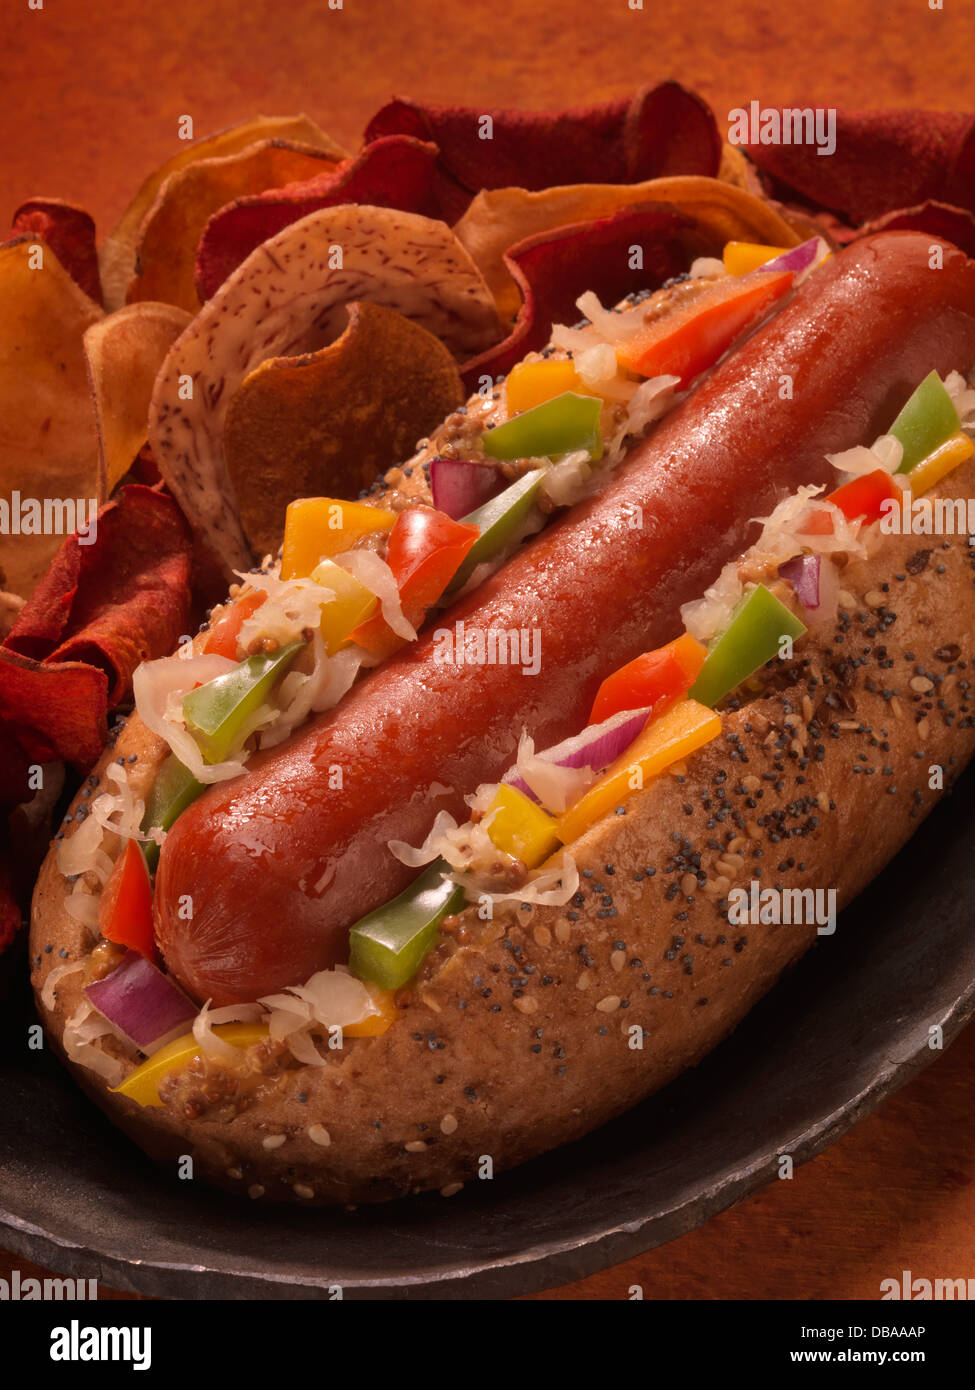 Einen geladenen Chicago Style Hotdog mit Deli-Chips. Stockfoto